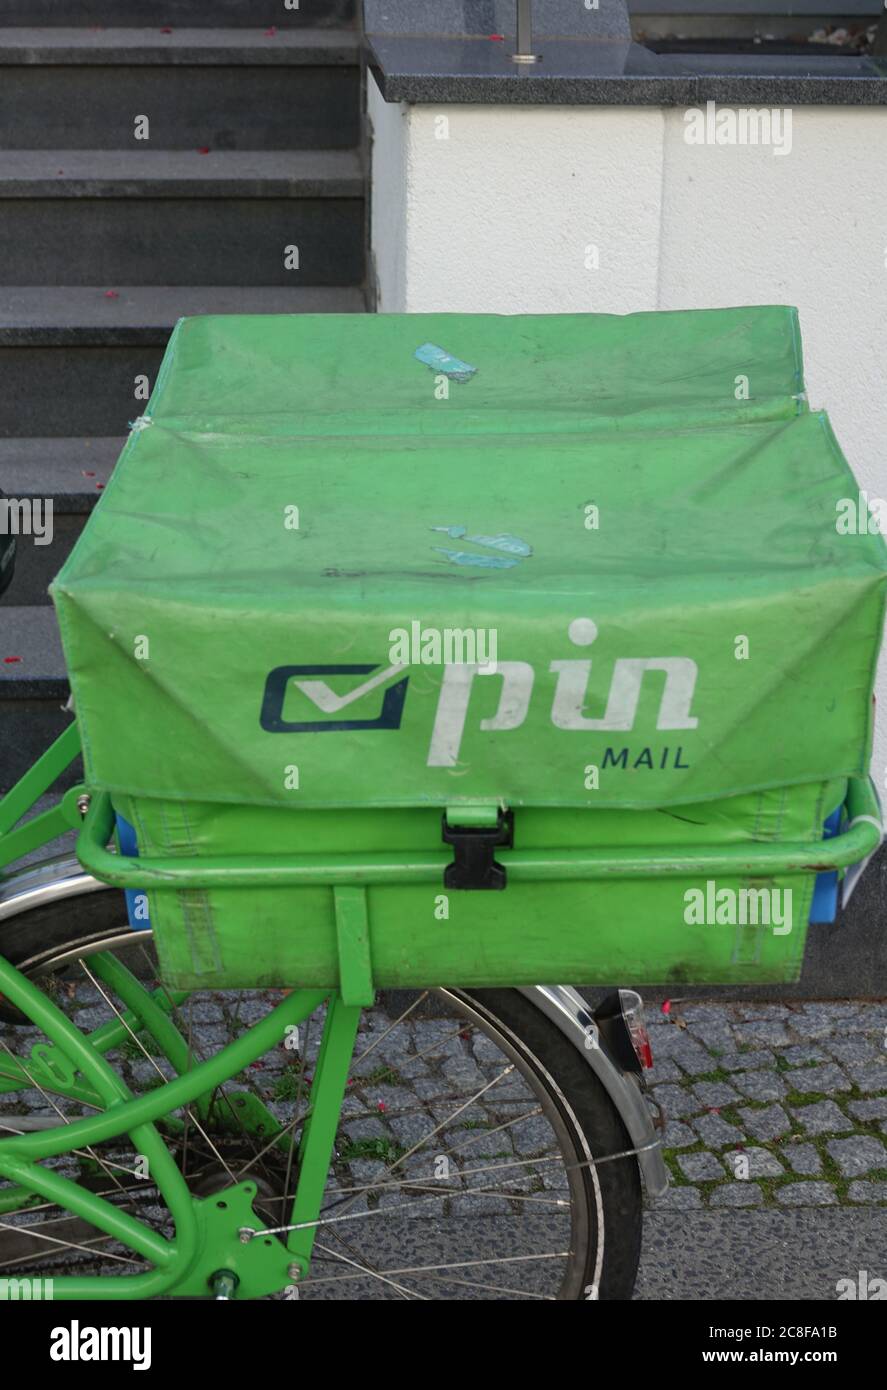 23. Juli 2020, Berlin: Eine Tasche auf dem Fahrrad der privaten Post Pin-Mail steht vor dem Eingang zu einem Haus. Foto: Alexandra Schuler/dpa - ACHTUNG: Lasche auf der Liefertasche ist verpixelt Stockfoto